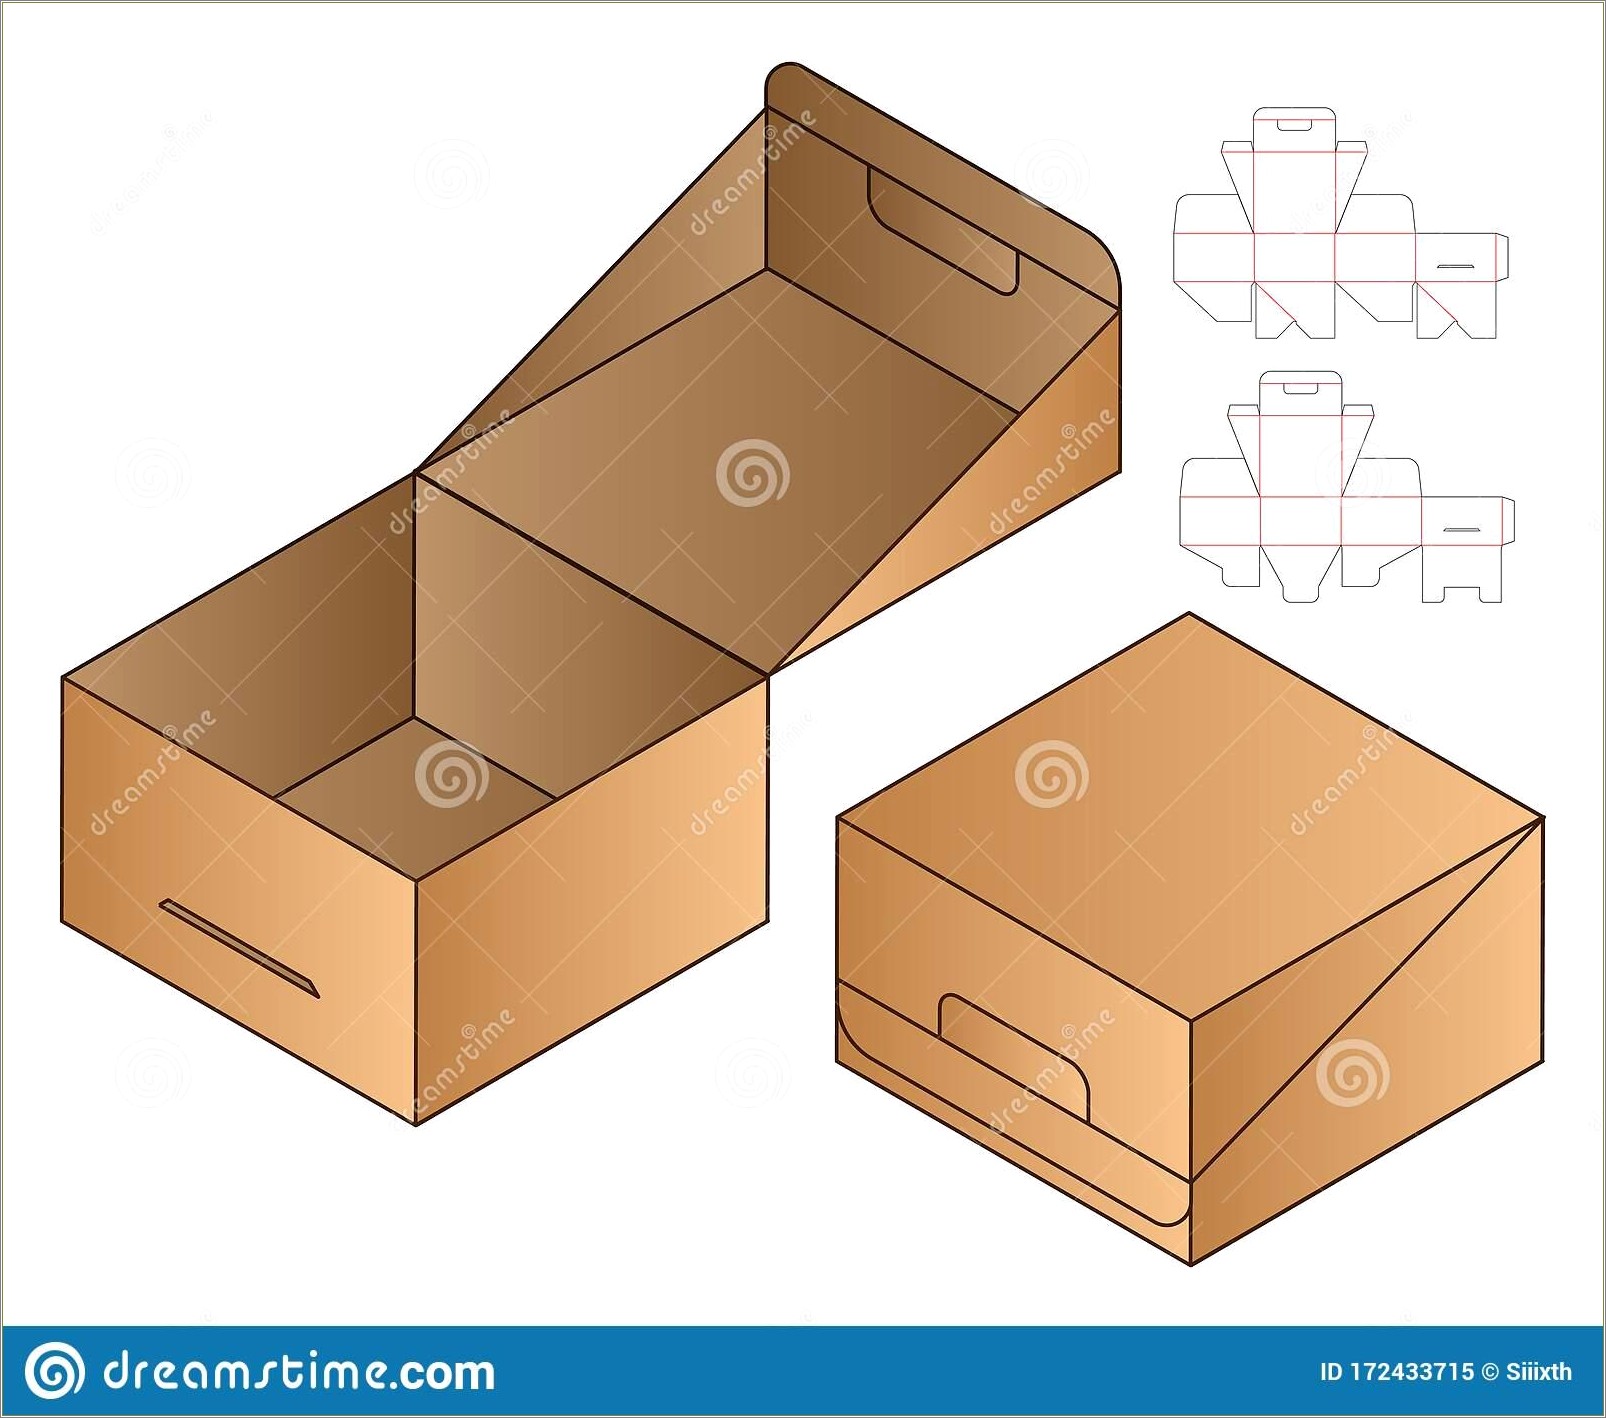 Box Packaging Die Cut Template Design Free